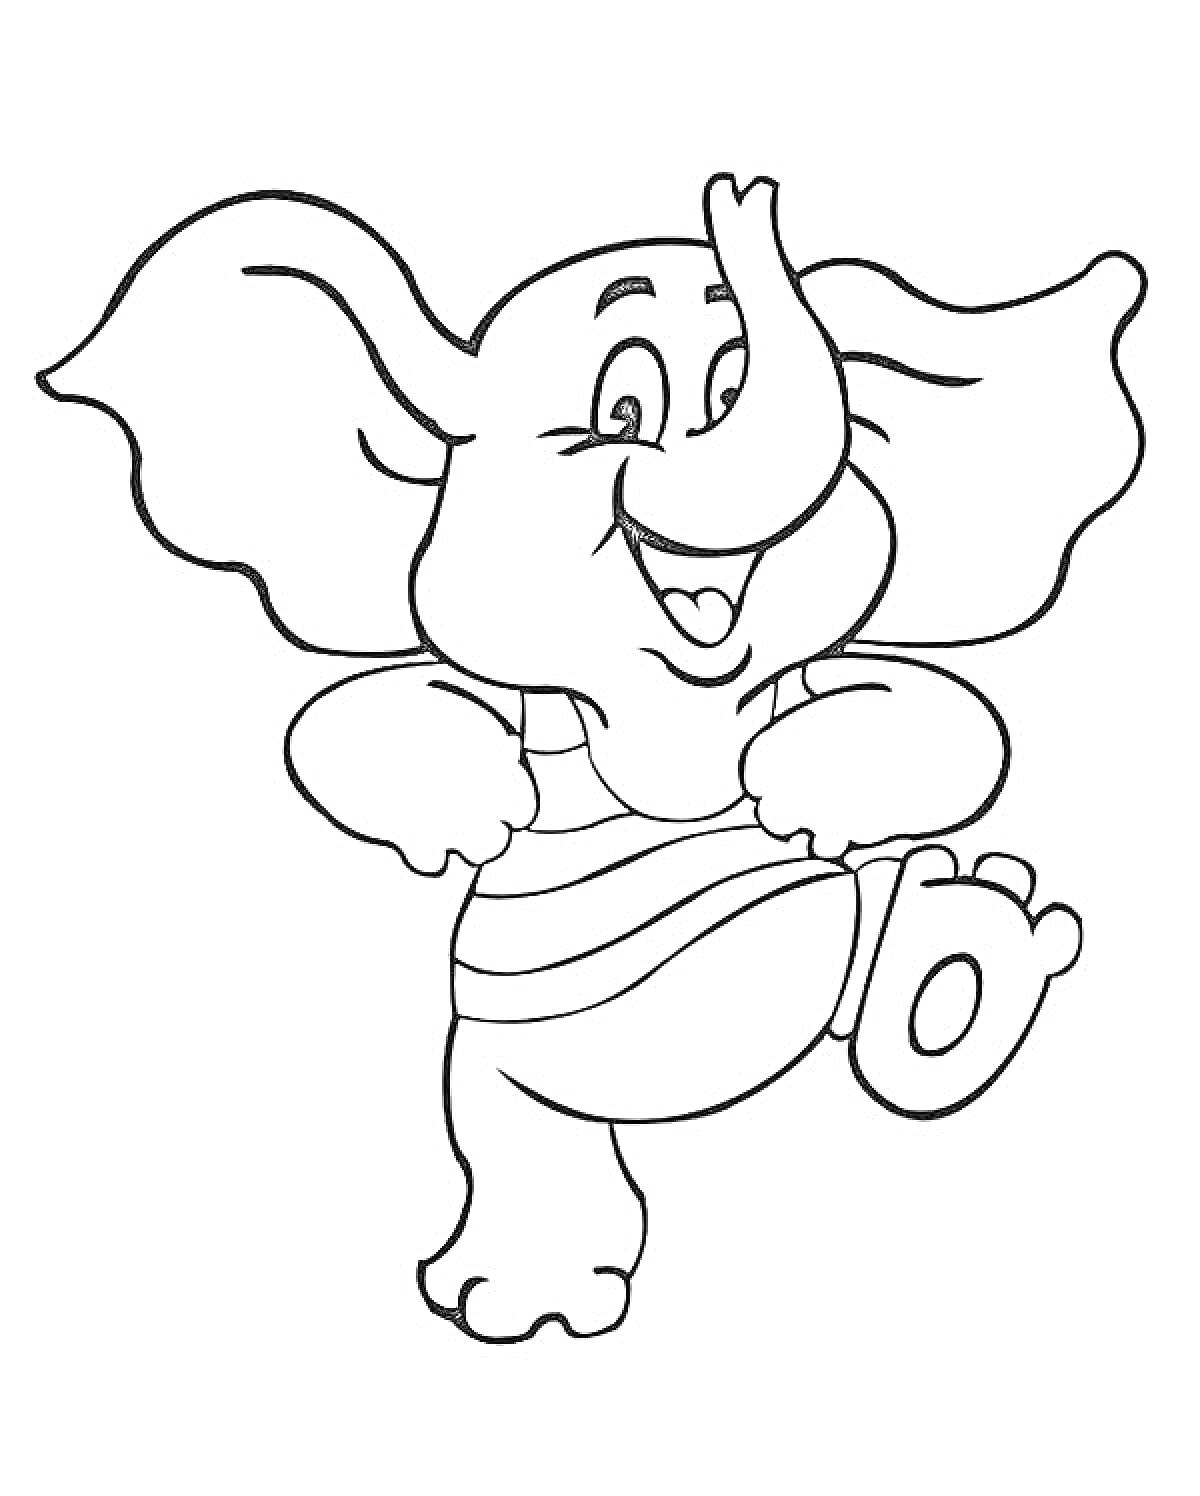 Раскраска Счастливый слоненок в полосатой майке